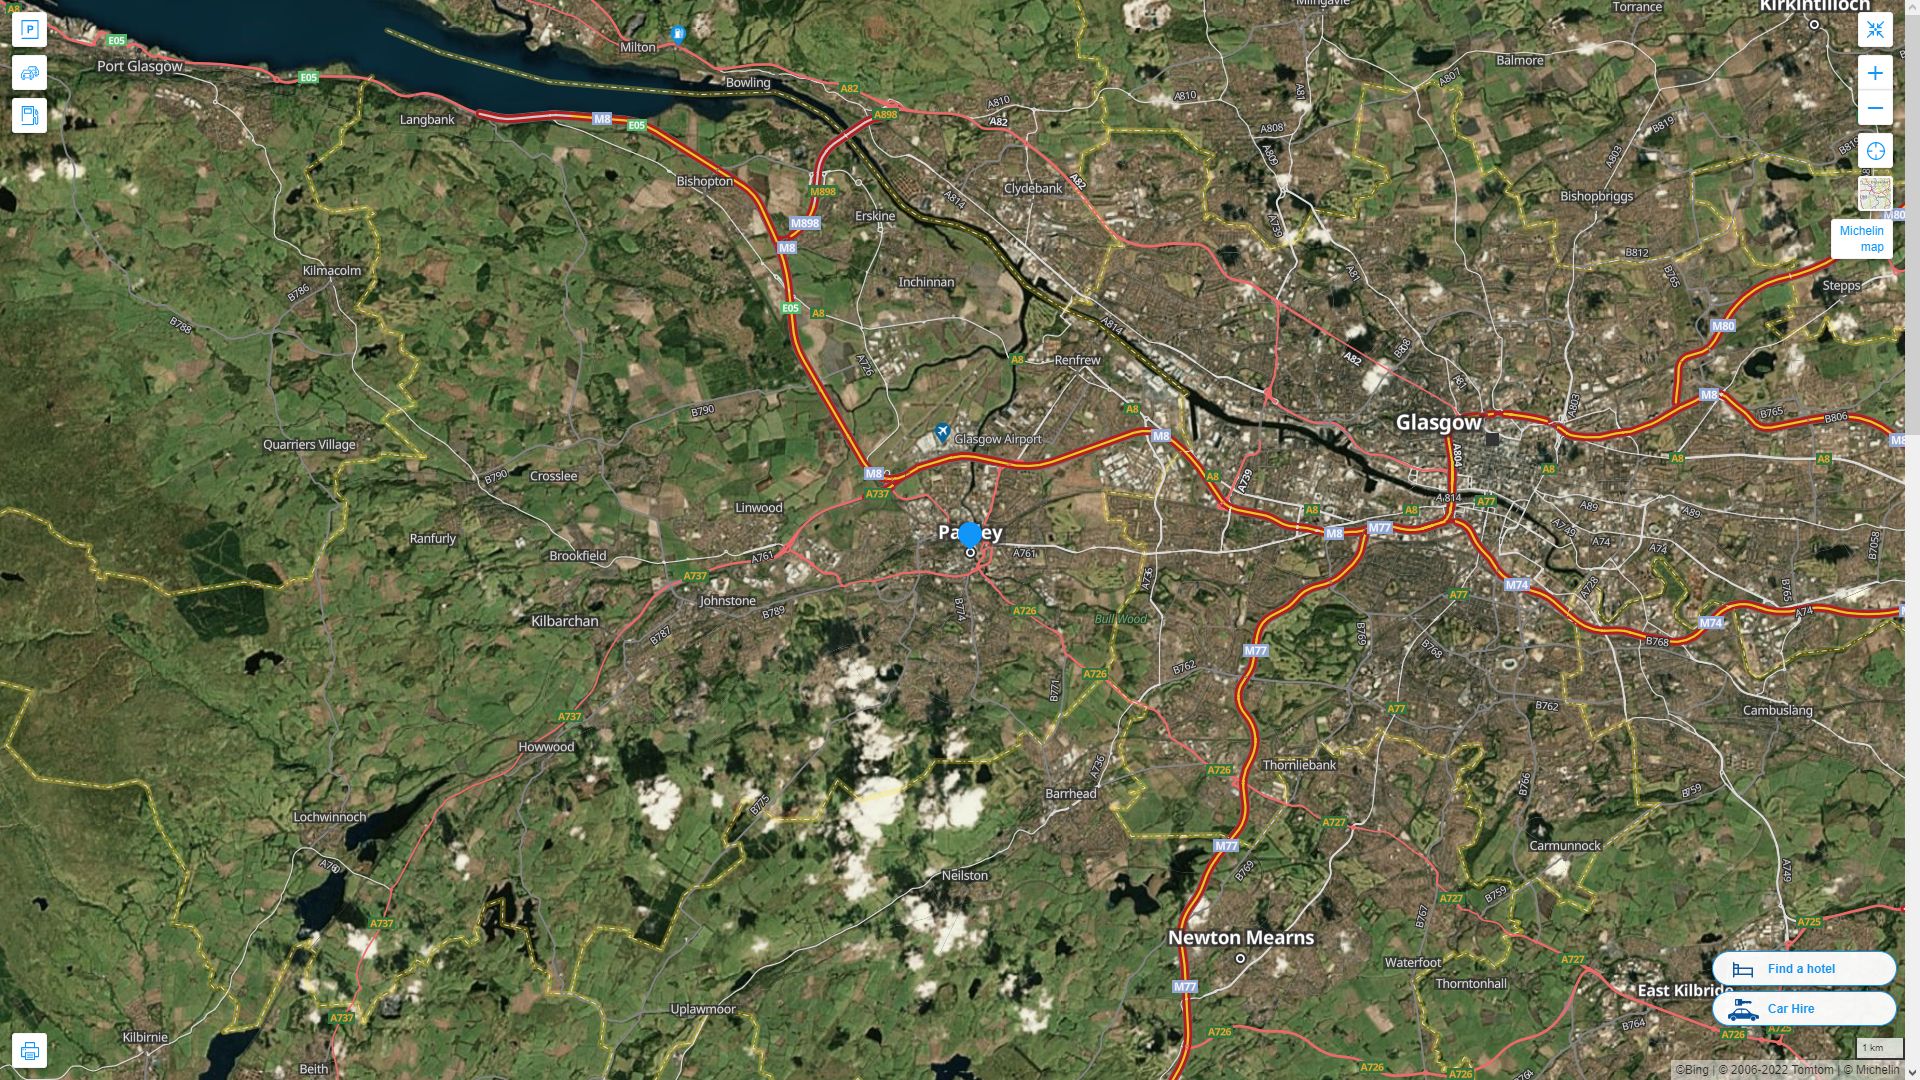 Paisley Royaume Uni Autoroute et carte routiere avec vue satellite